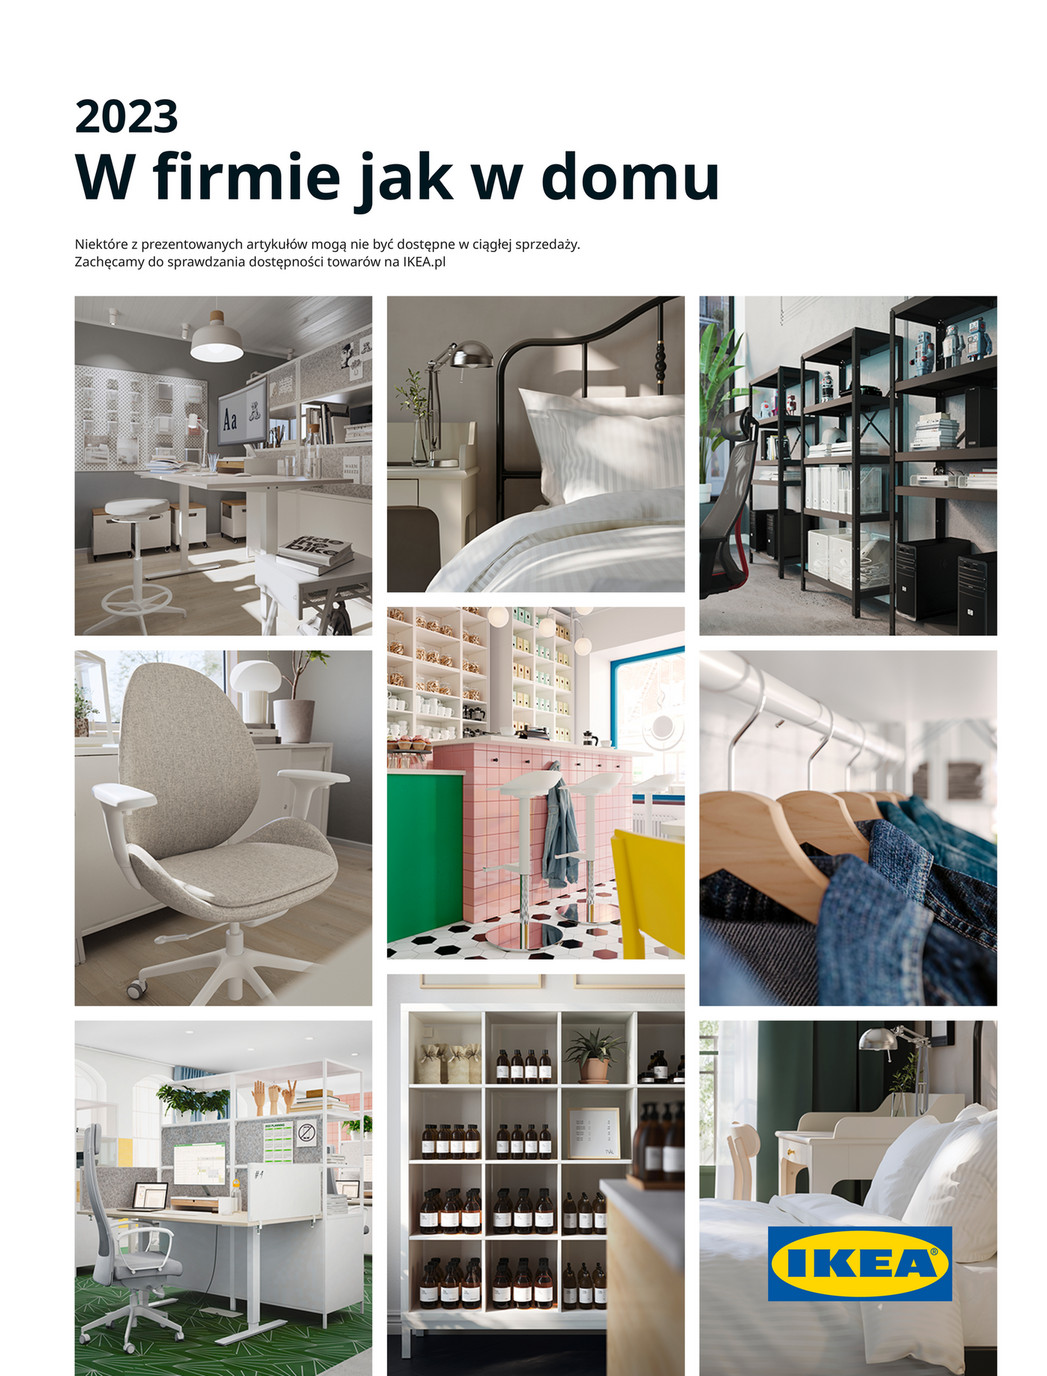 W firmie jak w domu - Ikea Gazetka promocyjna - W tym tygodniu - oferta 01/02/2023 - 01/03/2023